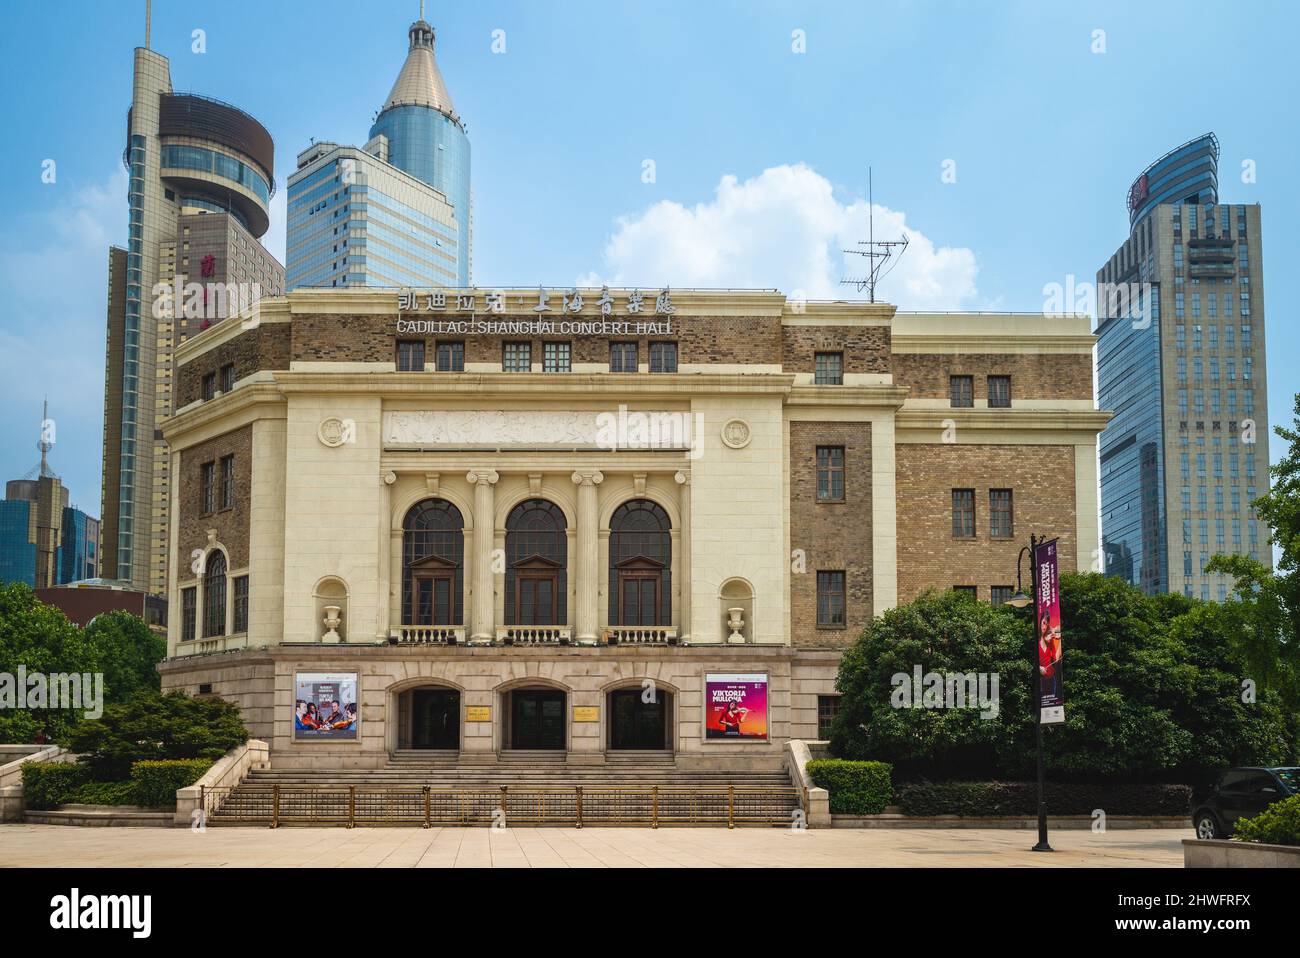 27 de julio de 2018: Cadillac shanghai sala de conciertos situada en el distrito de Huangpu, Shanghai, China, fundada en 1930 como Nanjing Drama Hall, renombrada Beijing Foto de stock